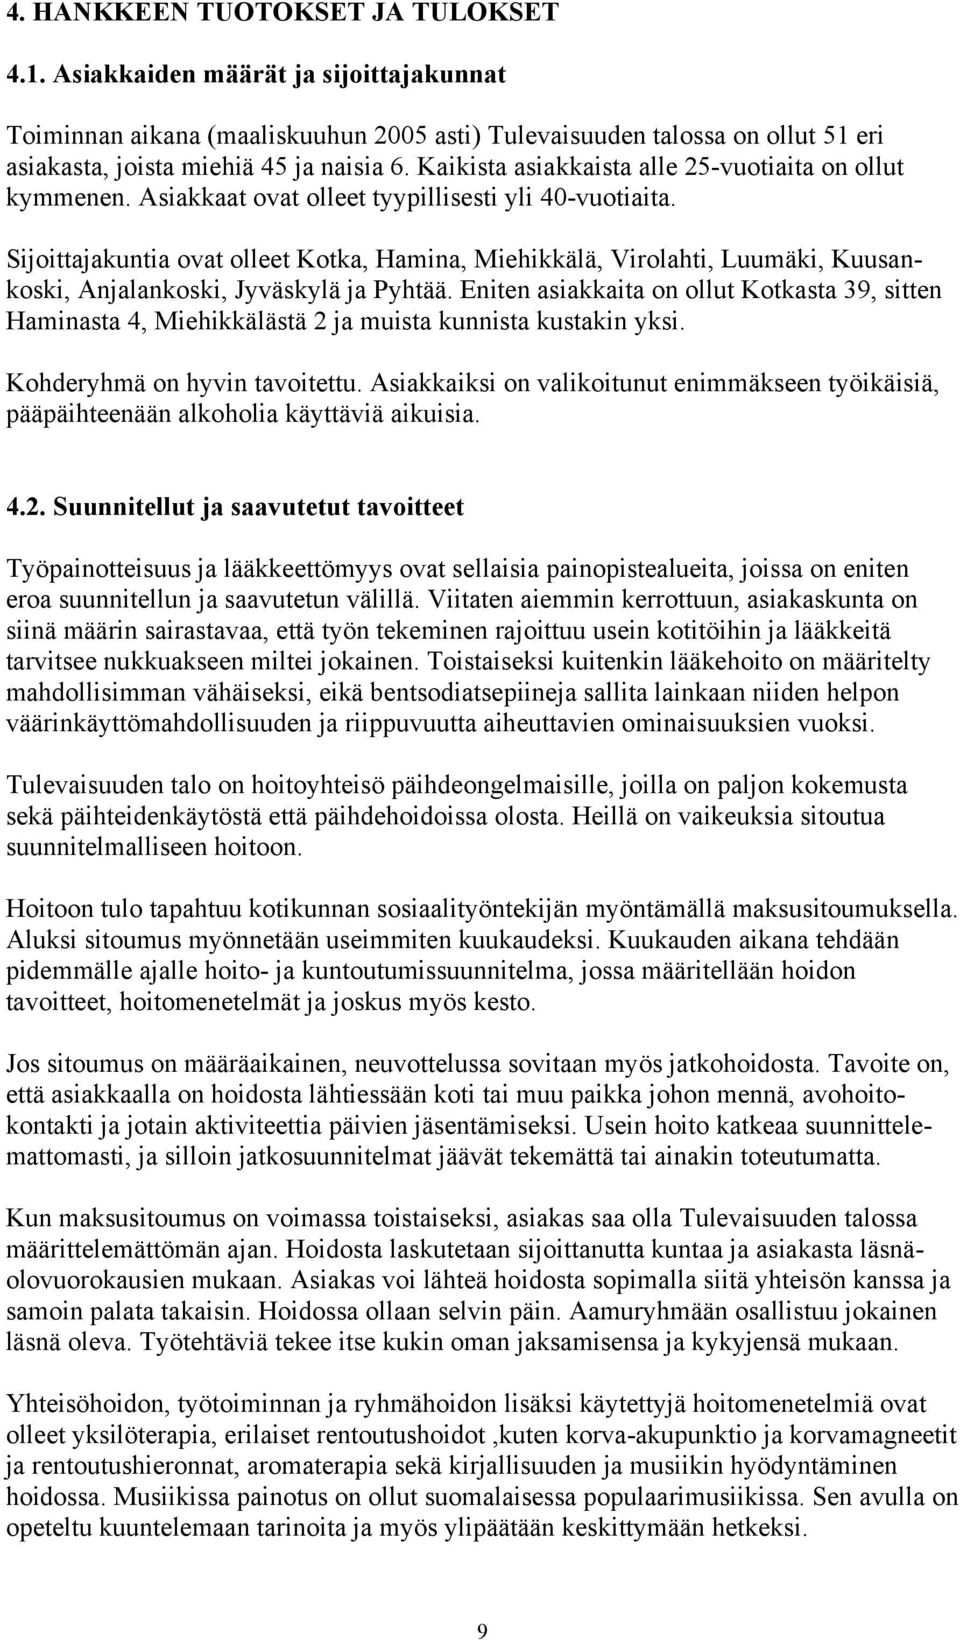 Sijoittajakuntia ovat olleet Kotka, Hamina, Miehikkälä, Virolahti, Luumäki, Kuusankoski, Anjalankoski, Jyväskylä ja Pyhtää.